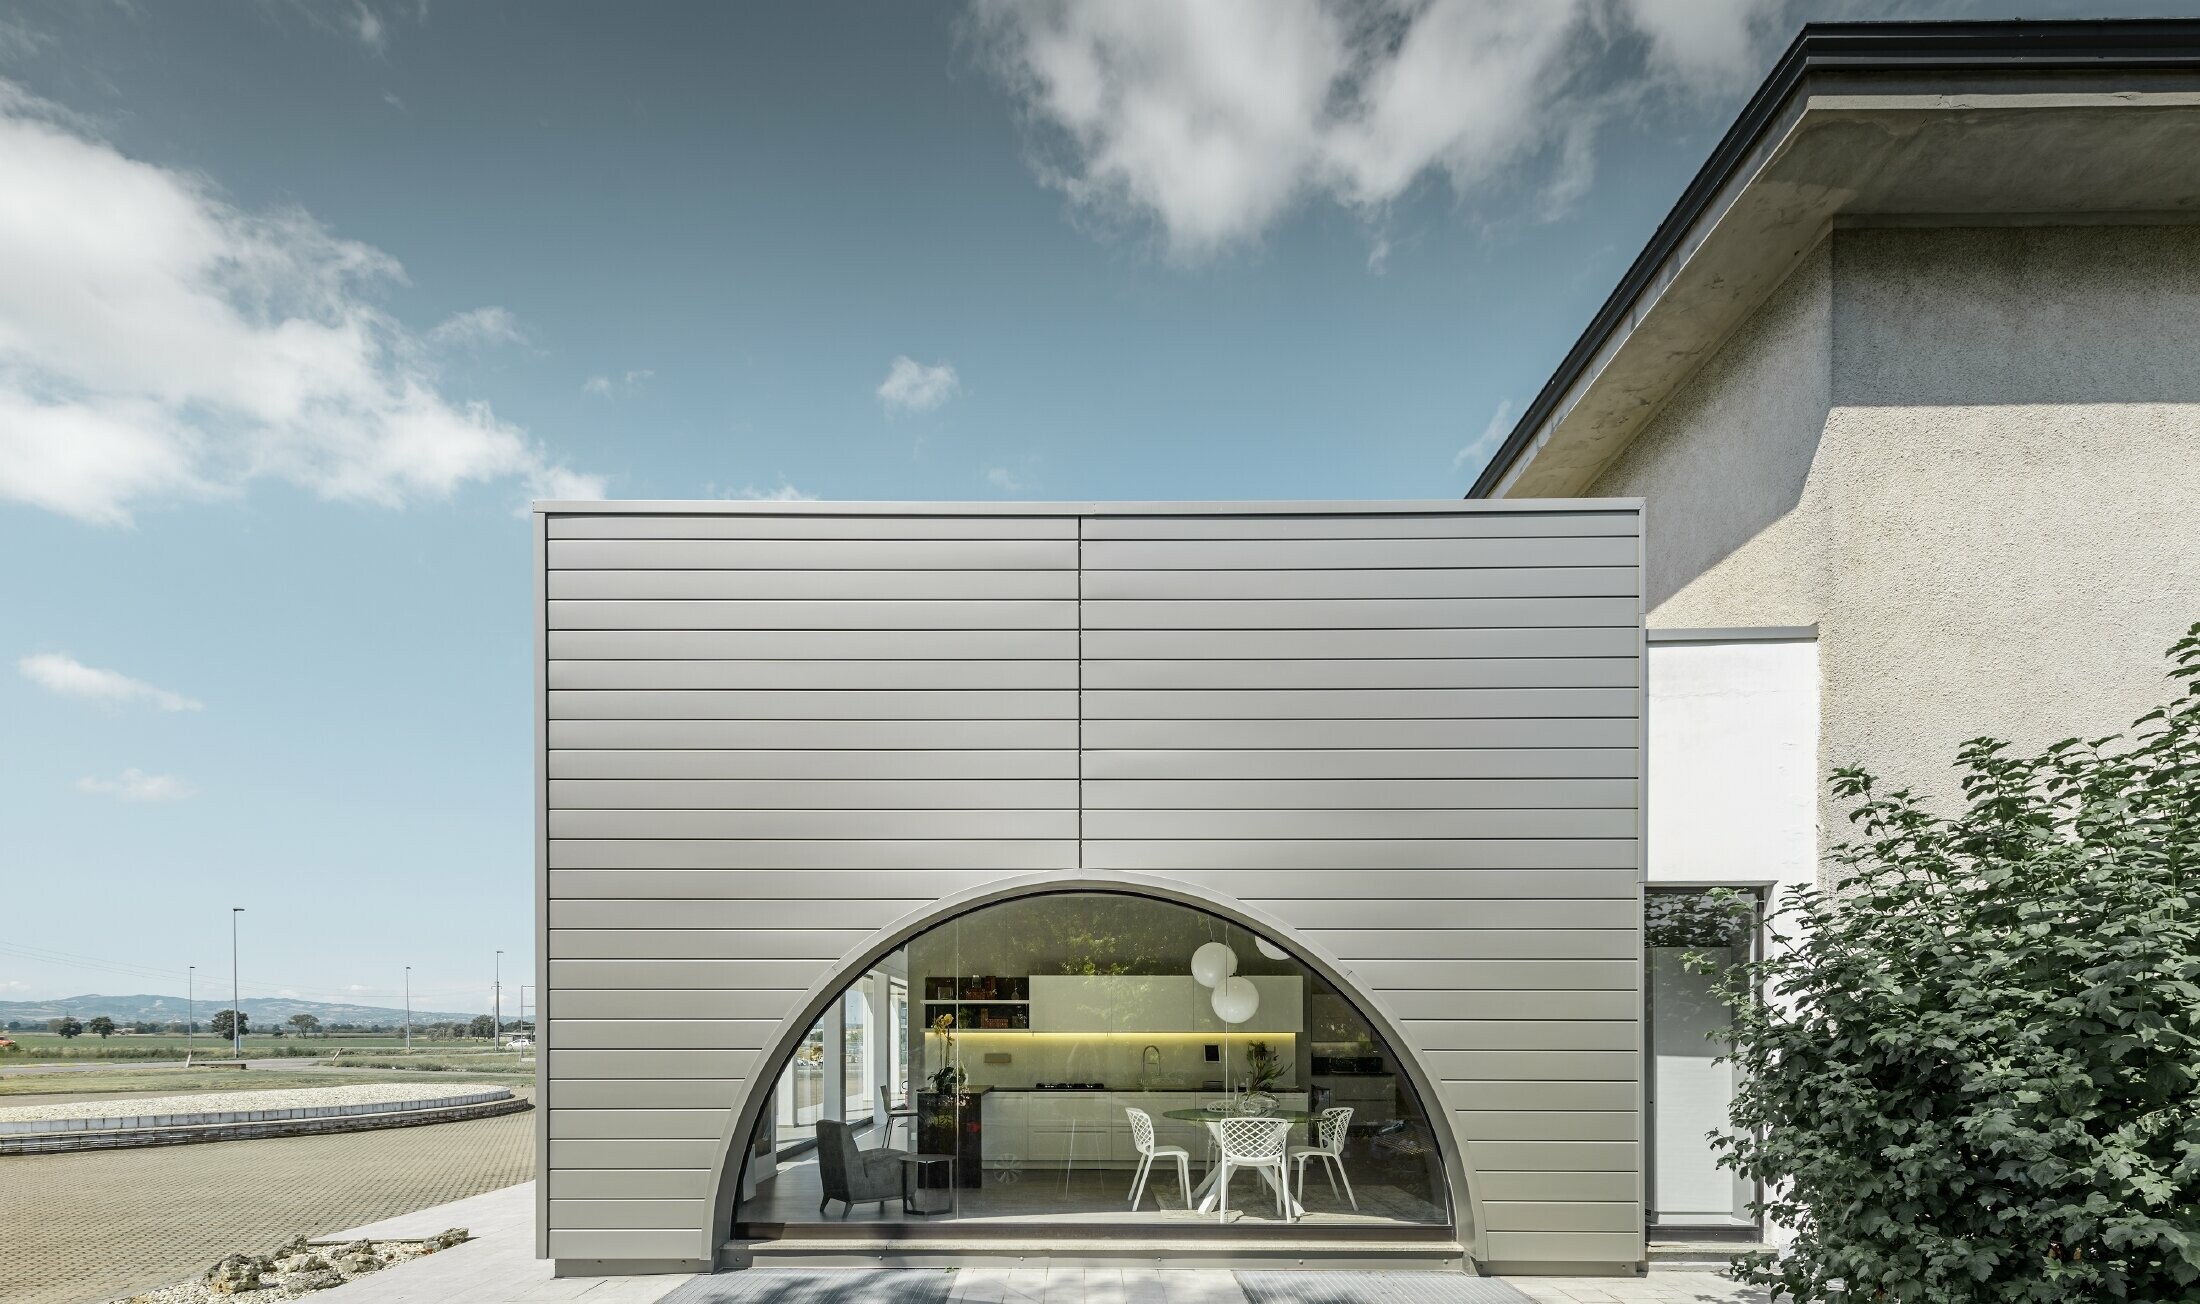 Façade rectiligne avec vitrine courbe ; habillage de façade en aluminium de PREFA avec les Sidings couleur argent fumé